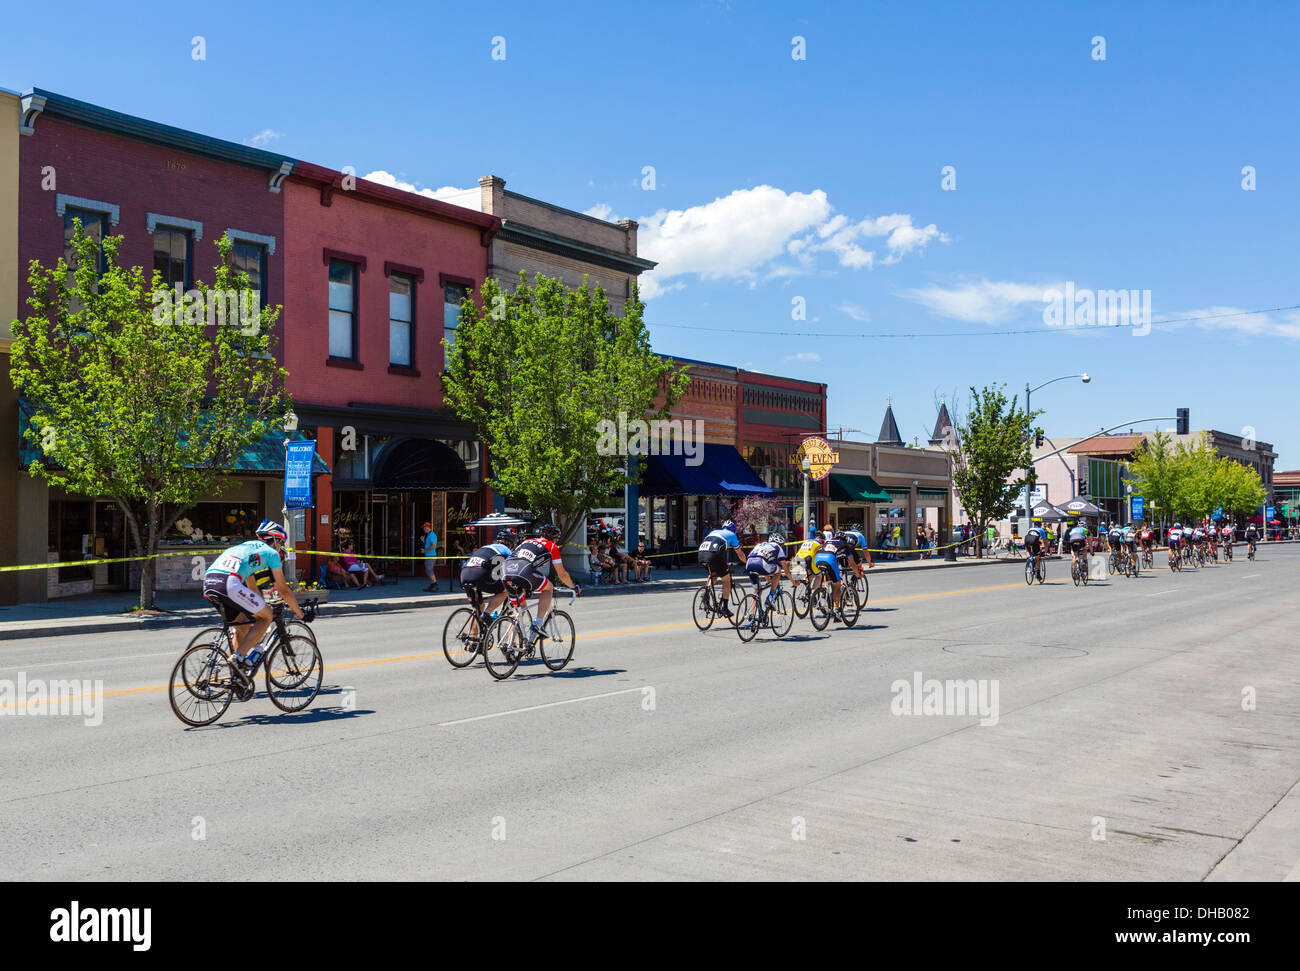 Le Baker City 2013 Cycling Classic course à vélo le long de la rue principale au centre-ville de Baker, Nevada, USA Banque D'Images